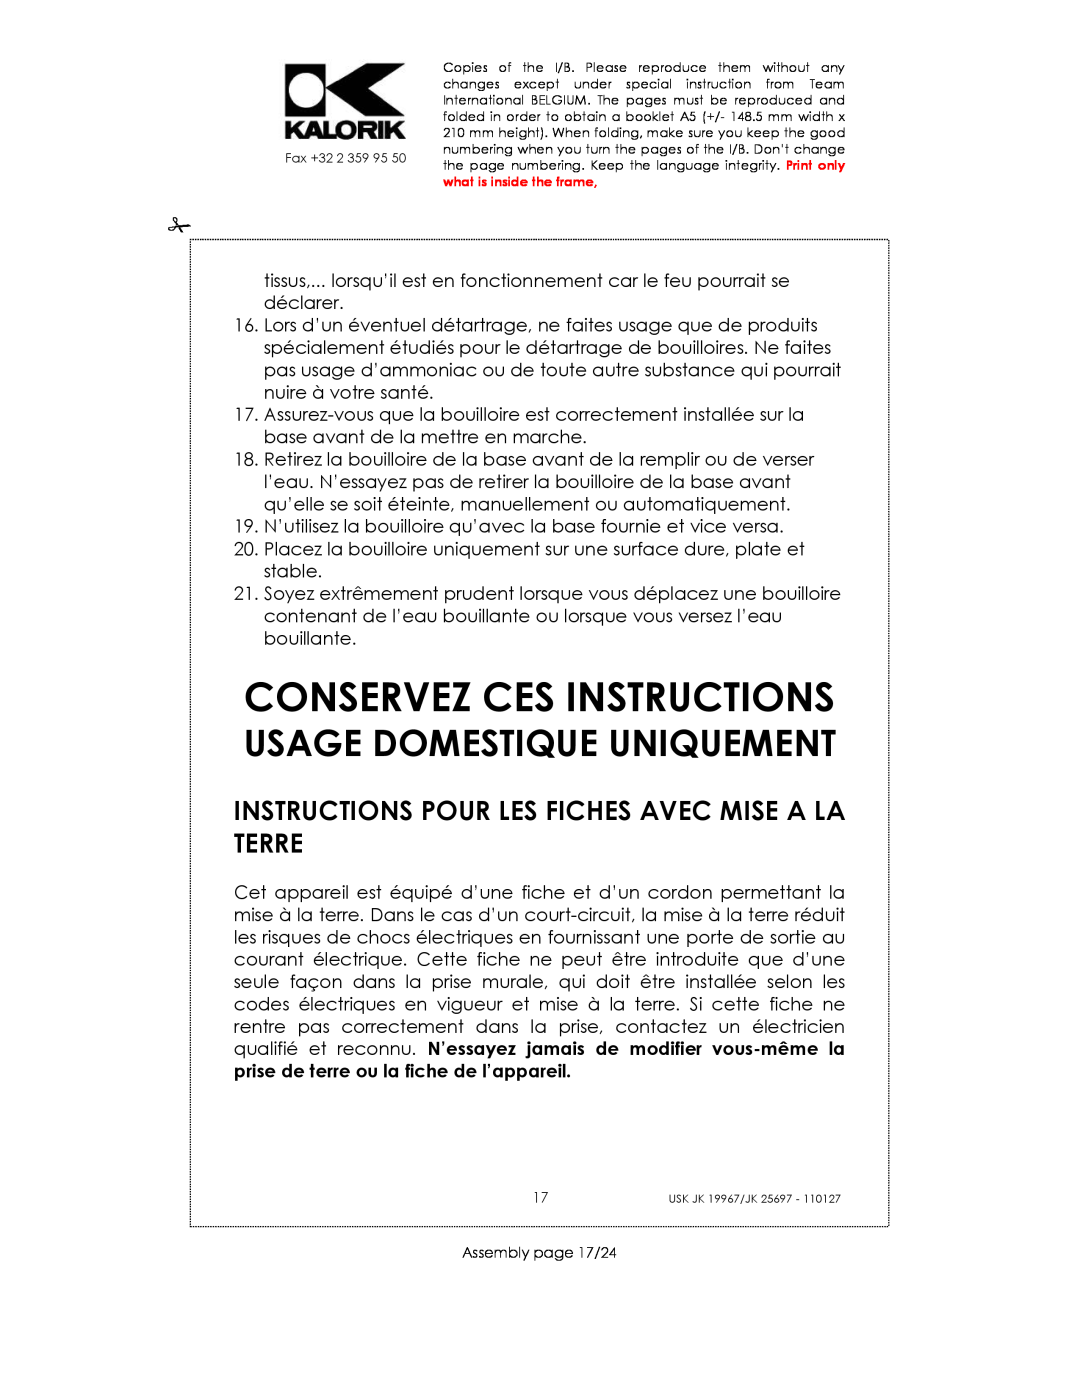 Kalorik JK 25697, JK 19967 manual Conservez Ces Instructions, Instructions Pour Les Fiches Avec Mise A La Terre 